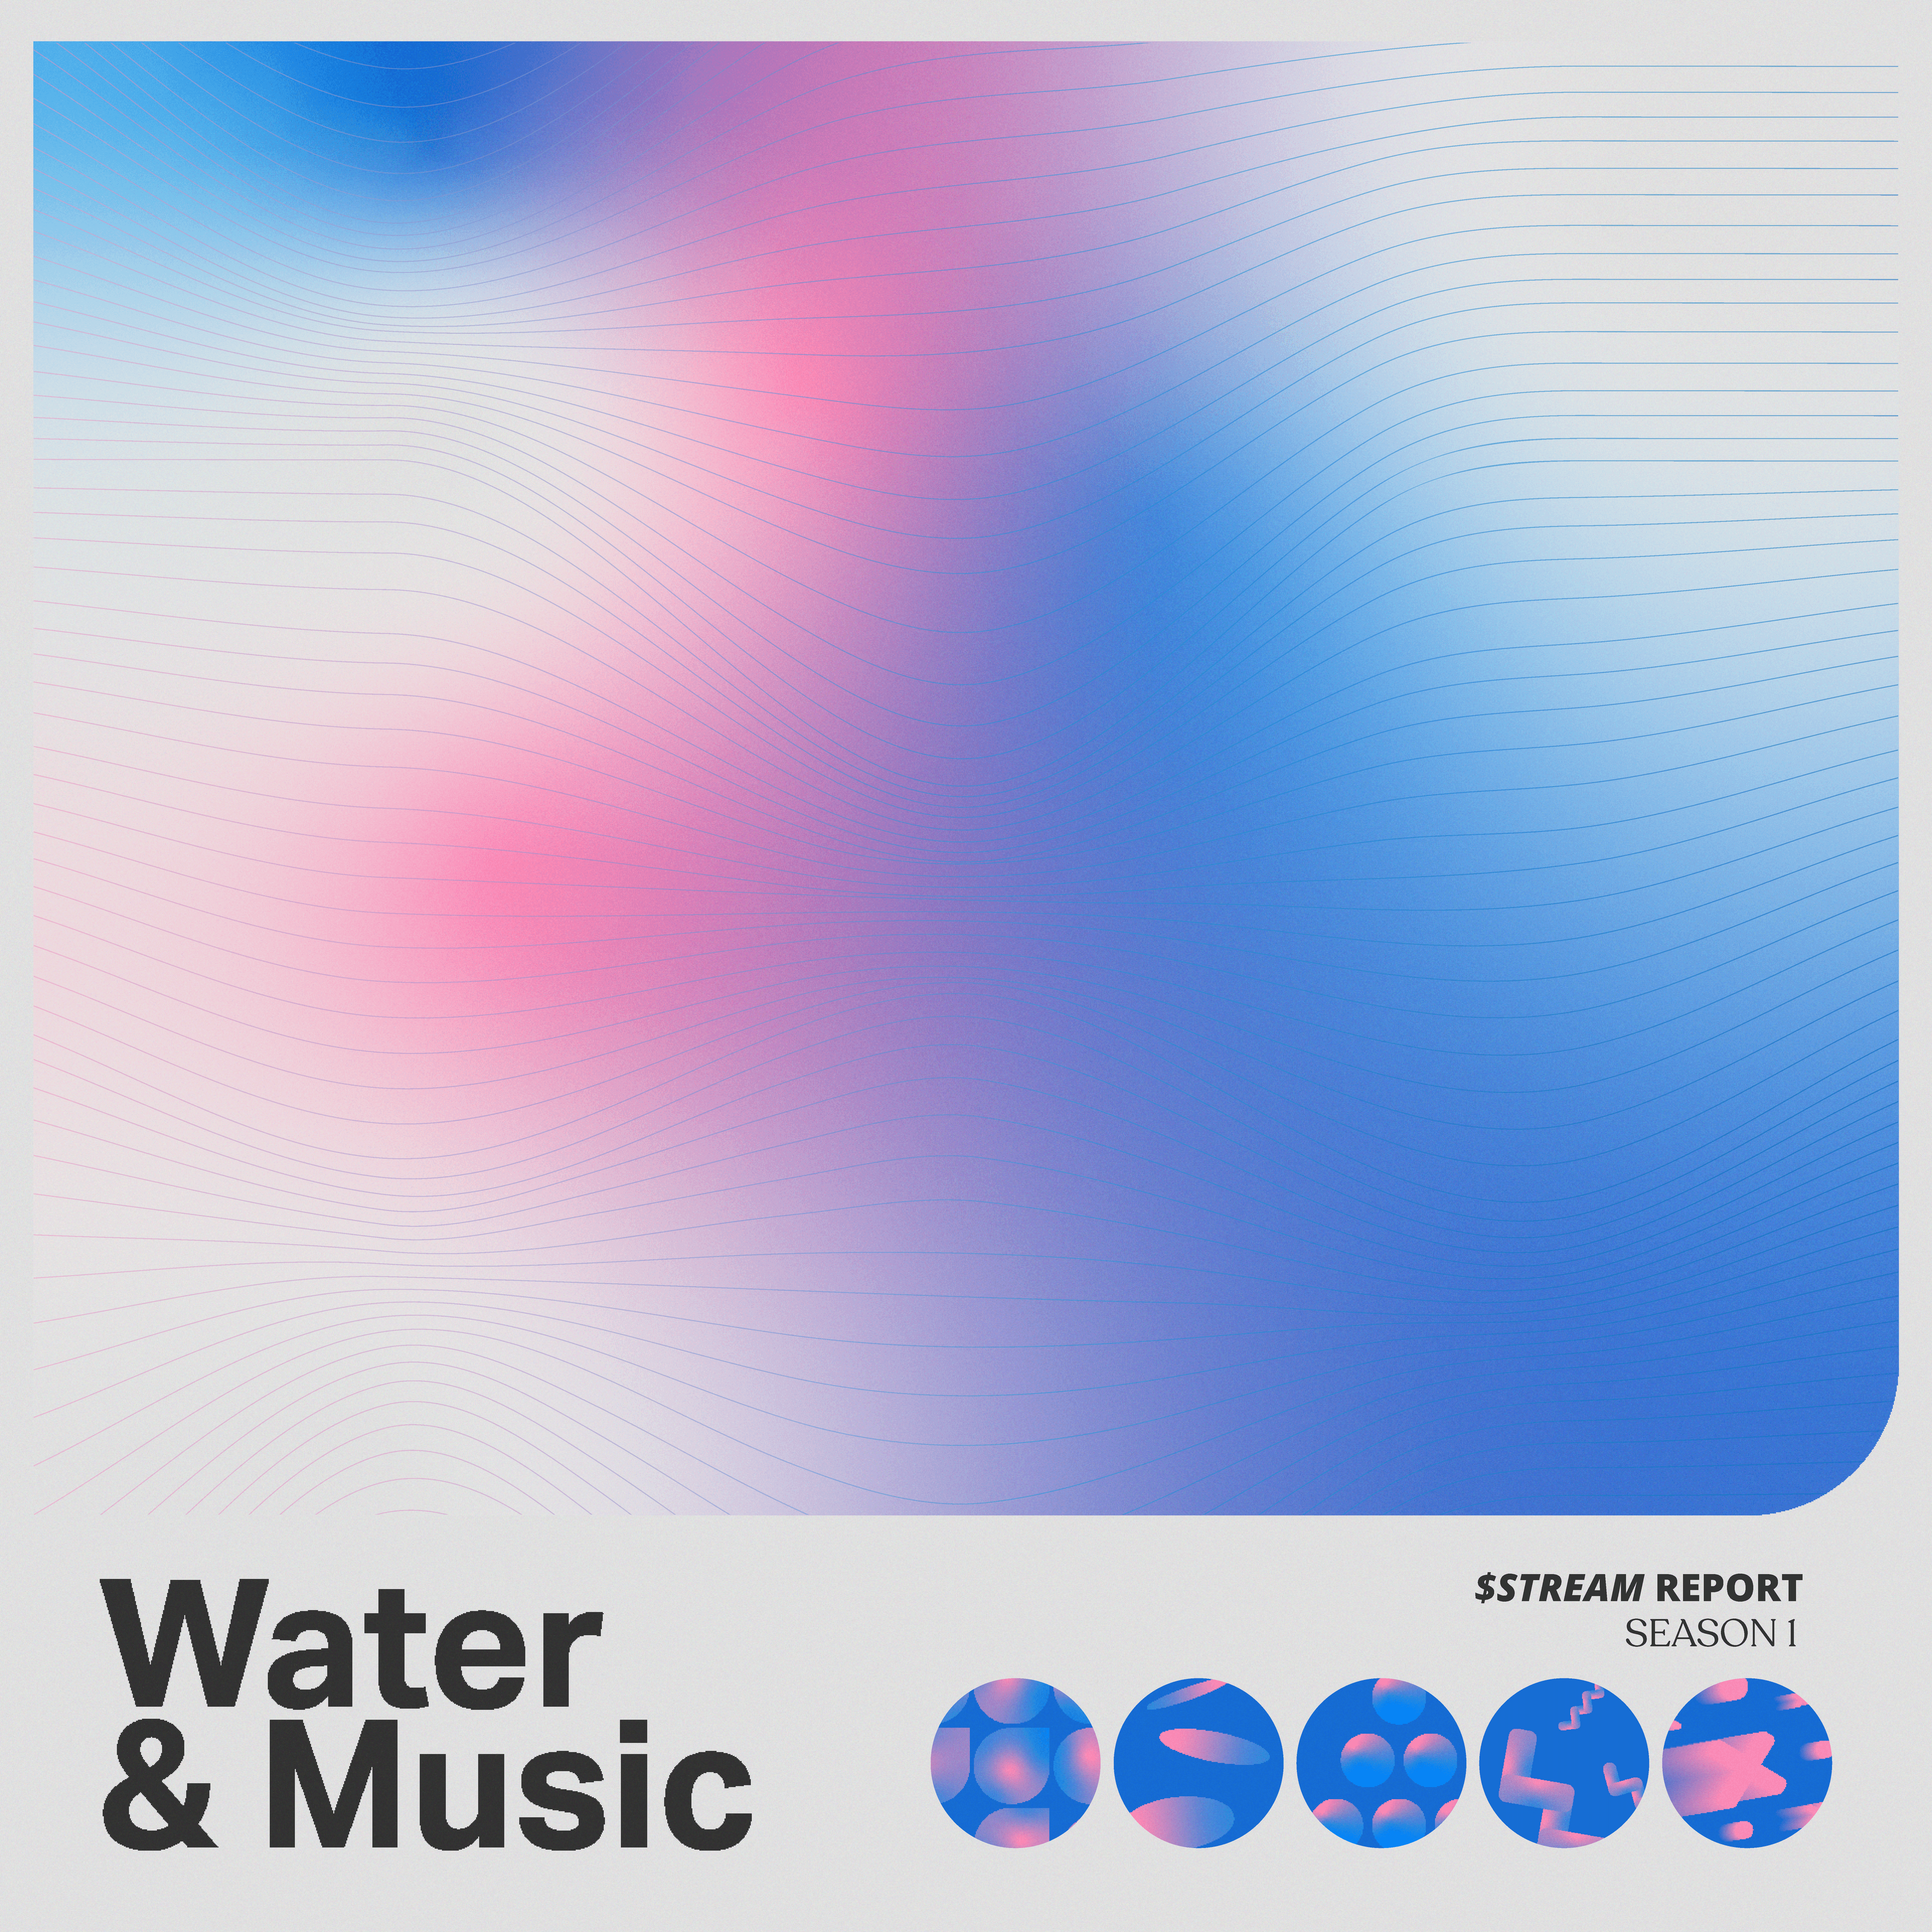 Water & Music $STREAM S1 1/100